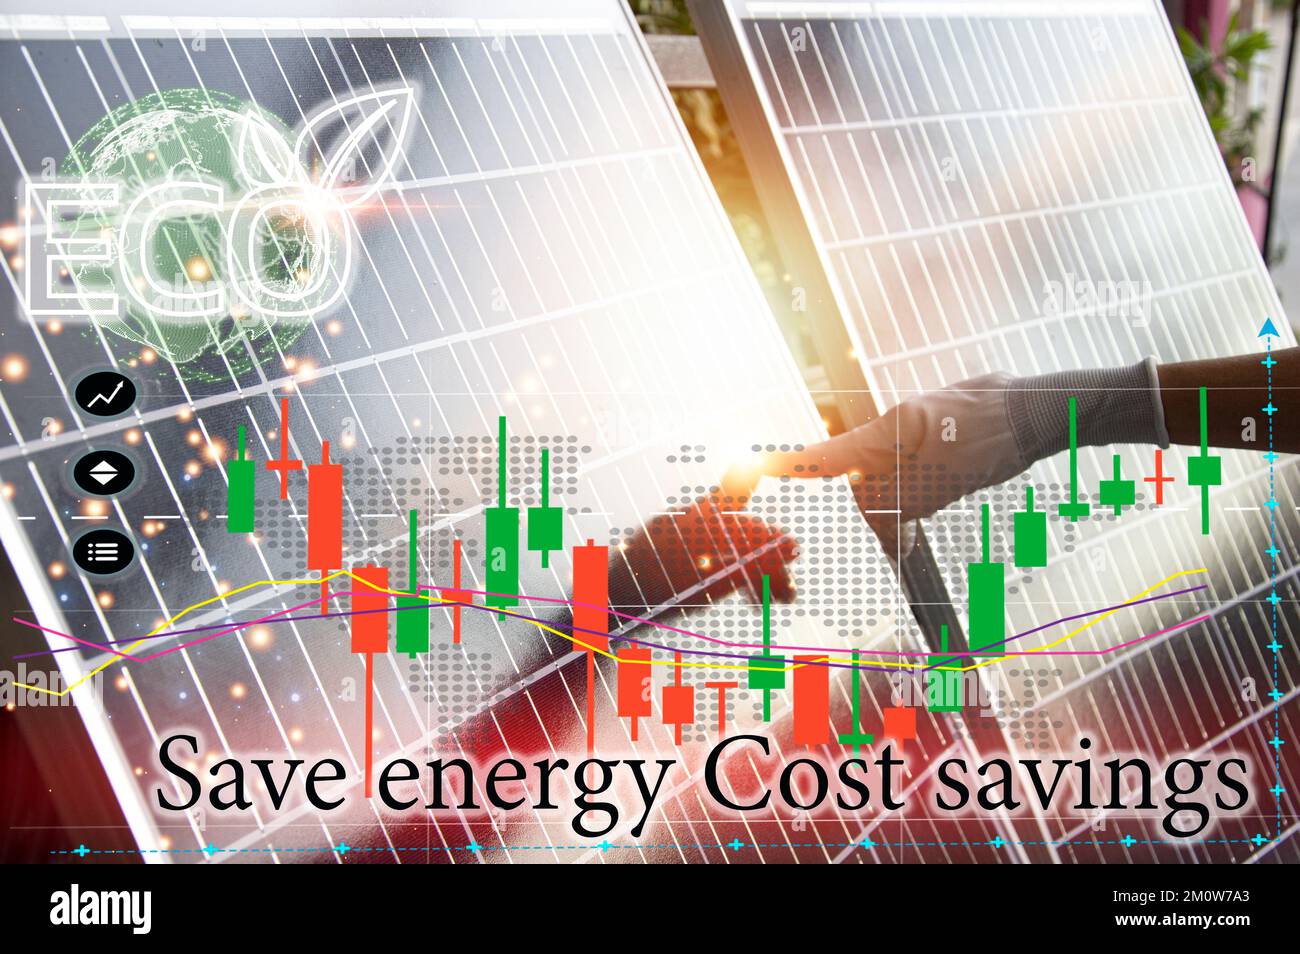 Il concetto di utilizzo di energia pulita come le celle solari, risparmio di energia, risparmio di costi. Foto Stock